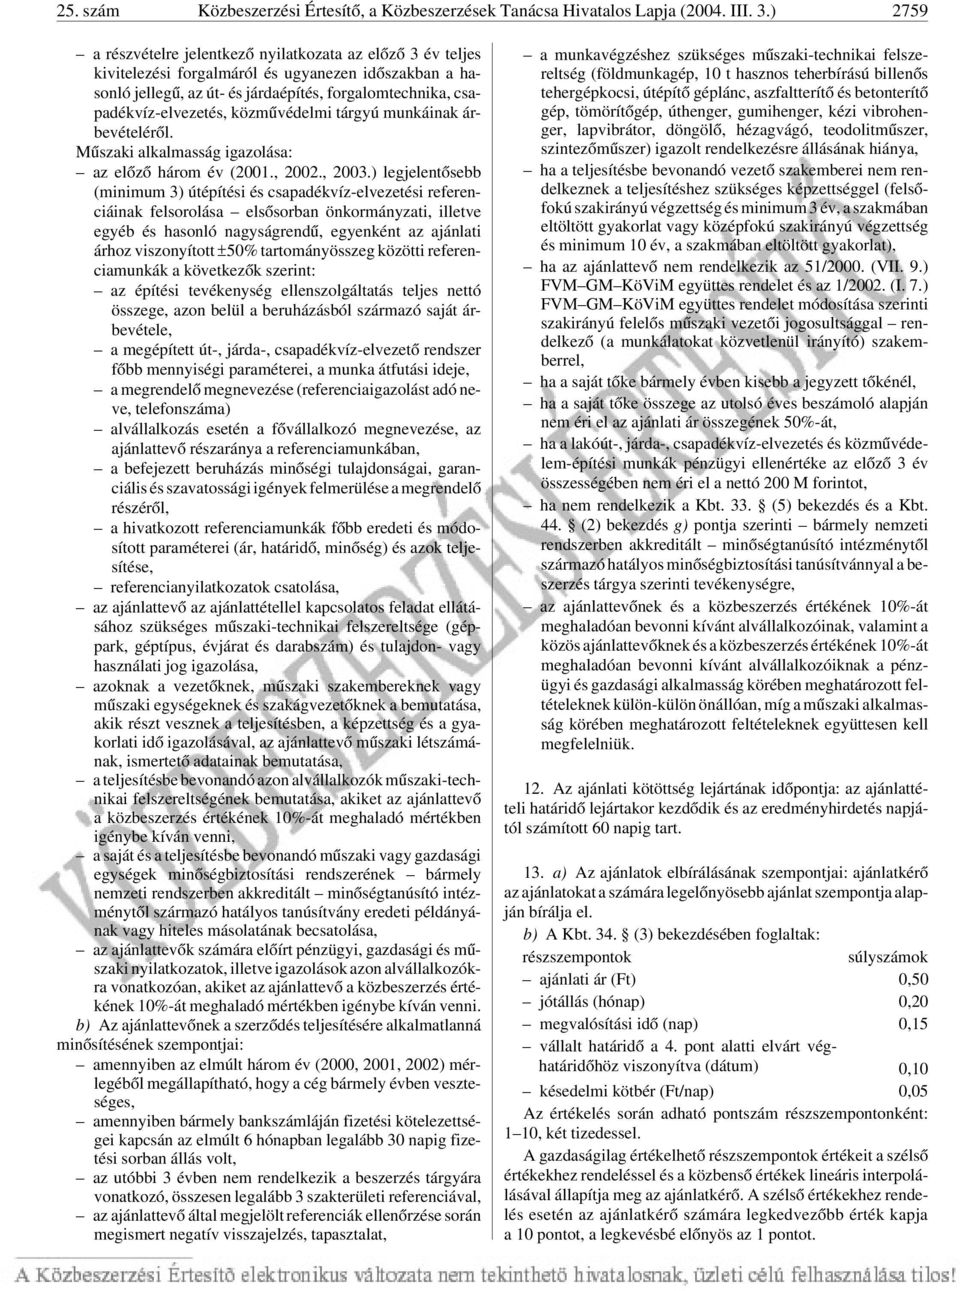 közmûvédelmi tárgyú munkáinak árbevételérõl. Mûszaki alkalmasság igazolása: az elõzõ három év (2001., 2002., 2003.